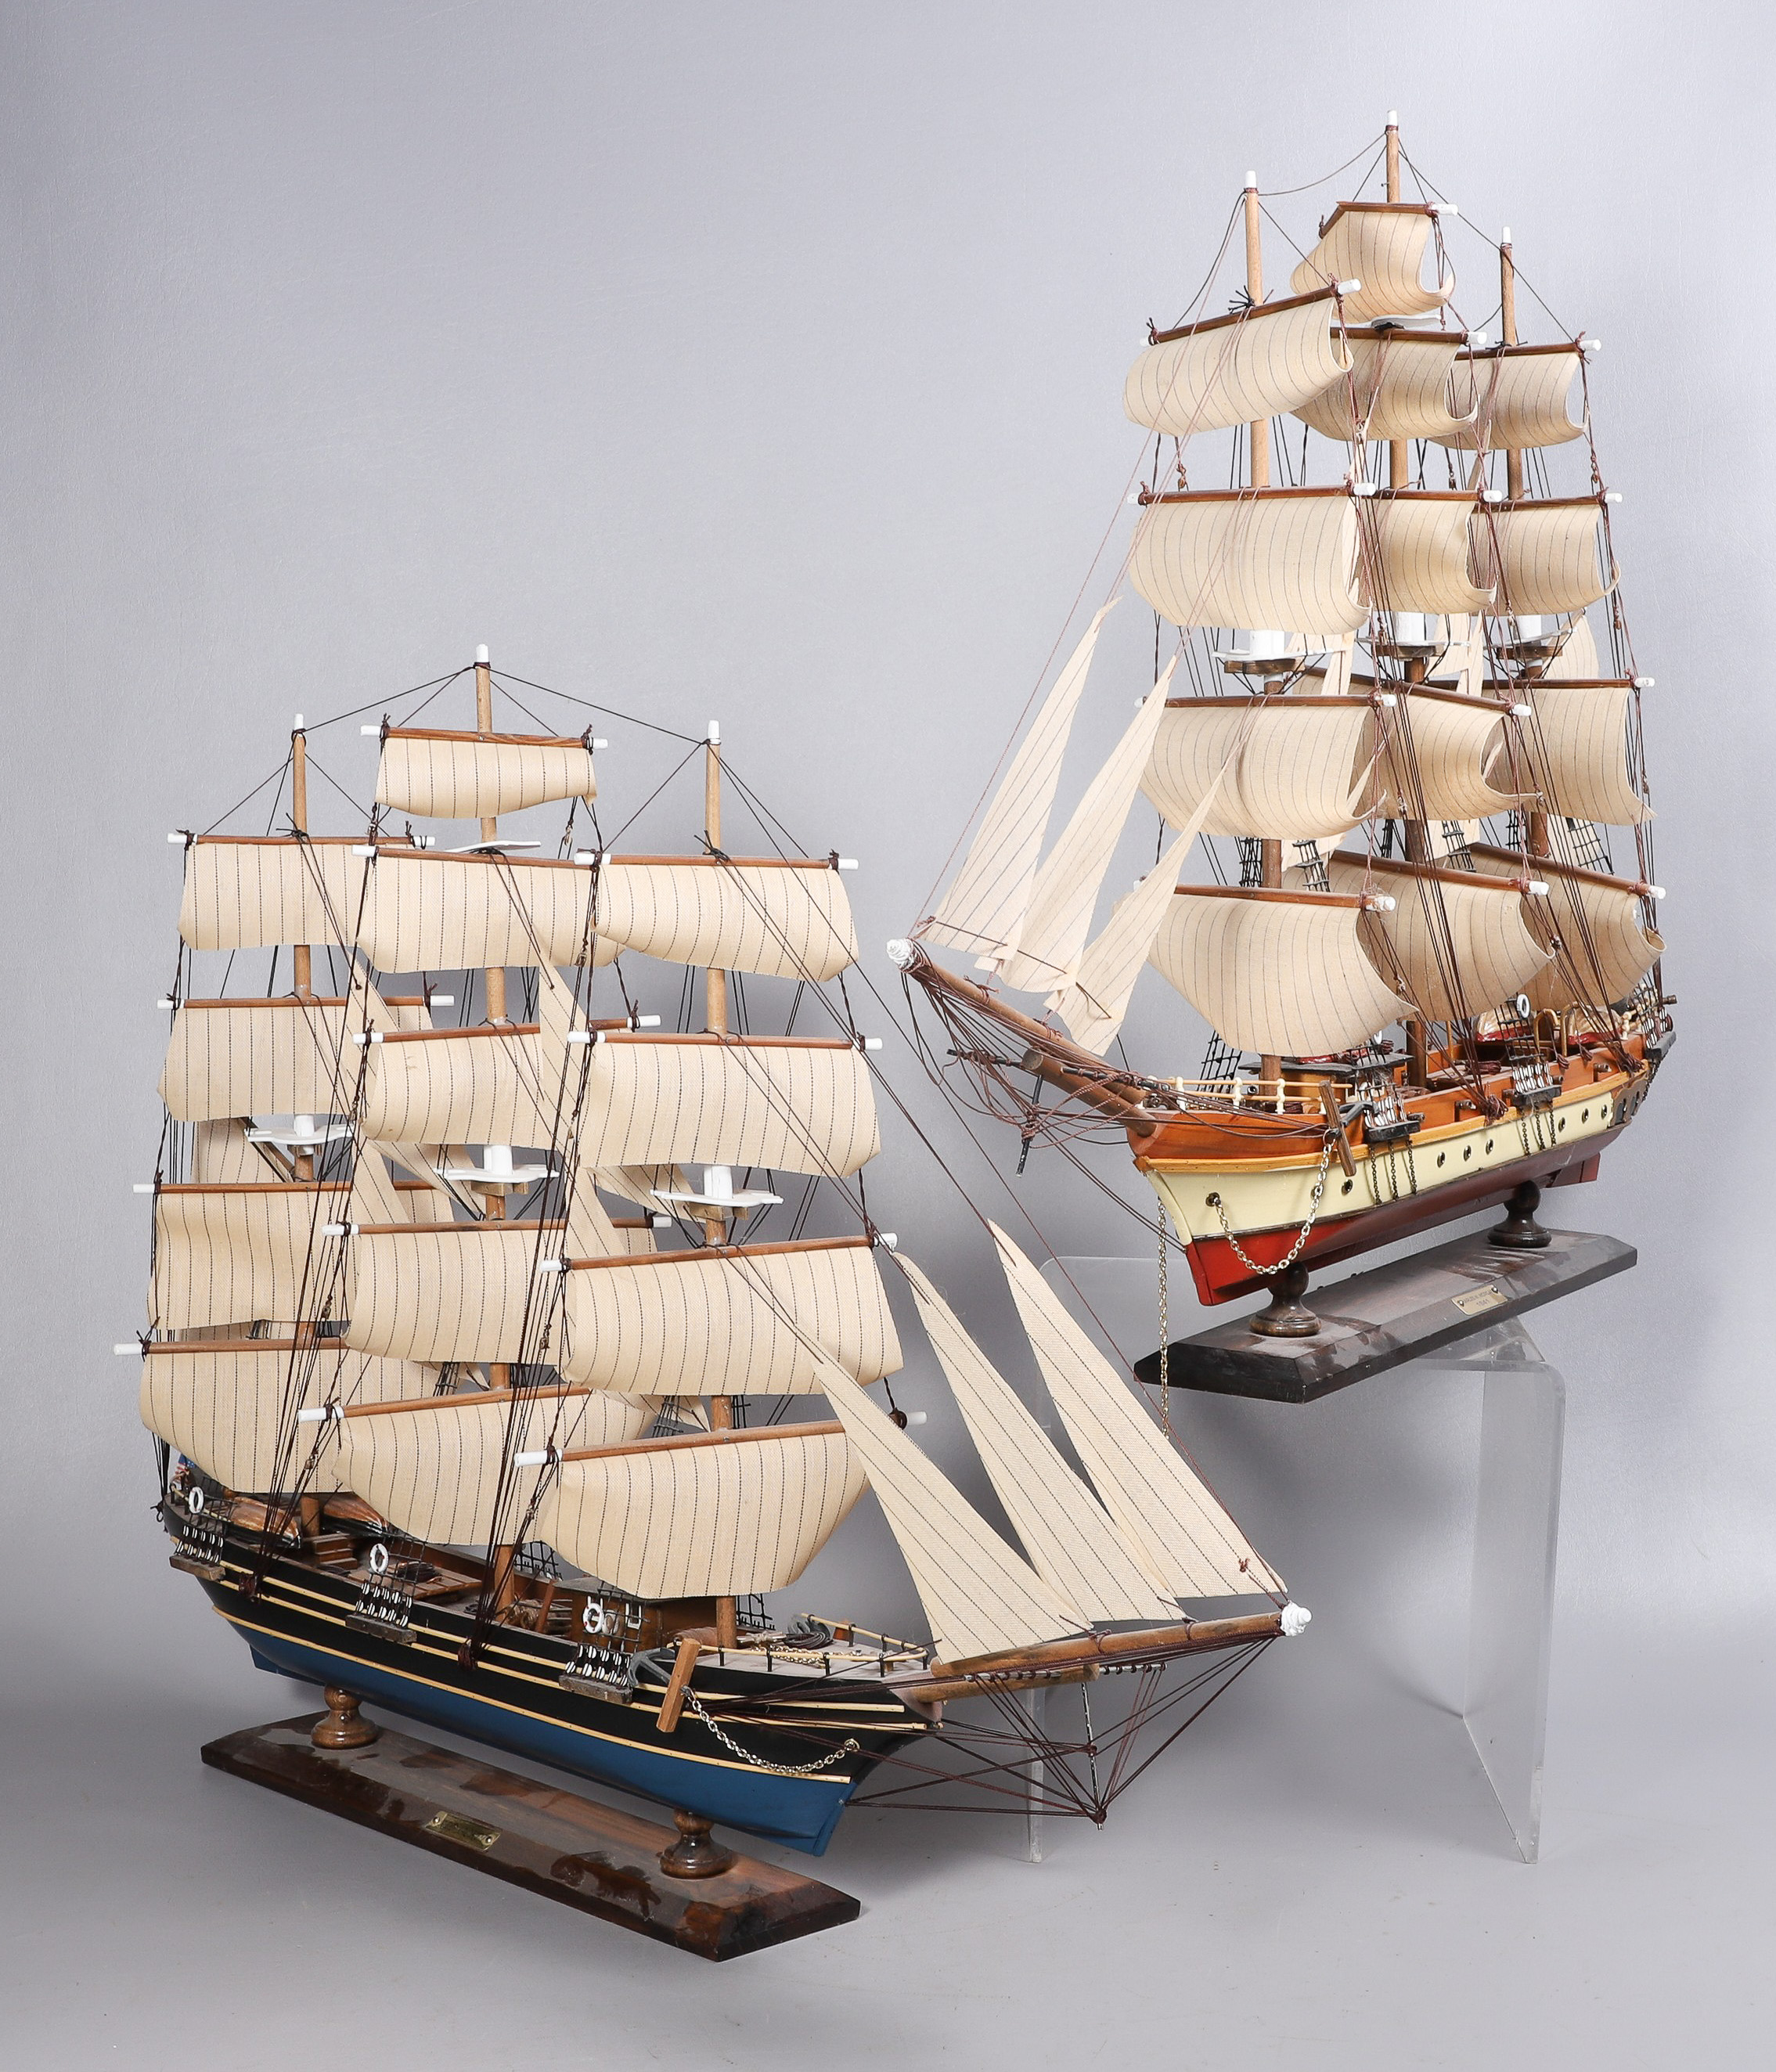 (2) Sailing ship models, c/o "Red